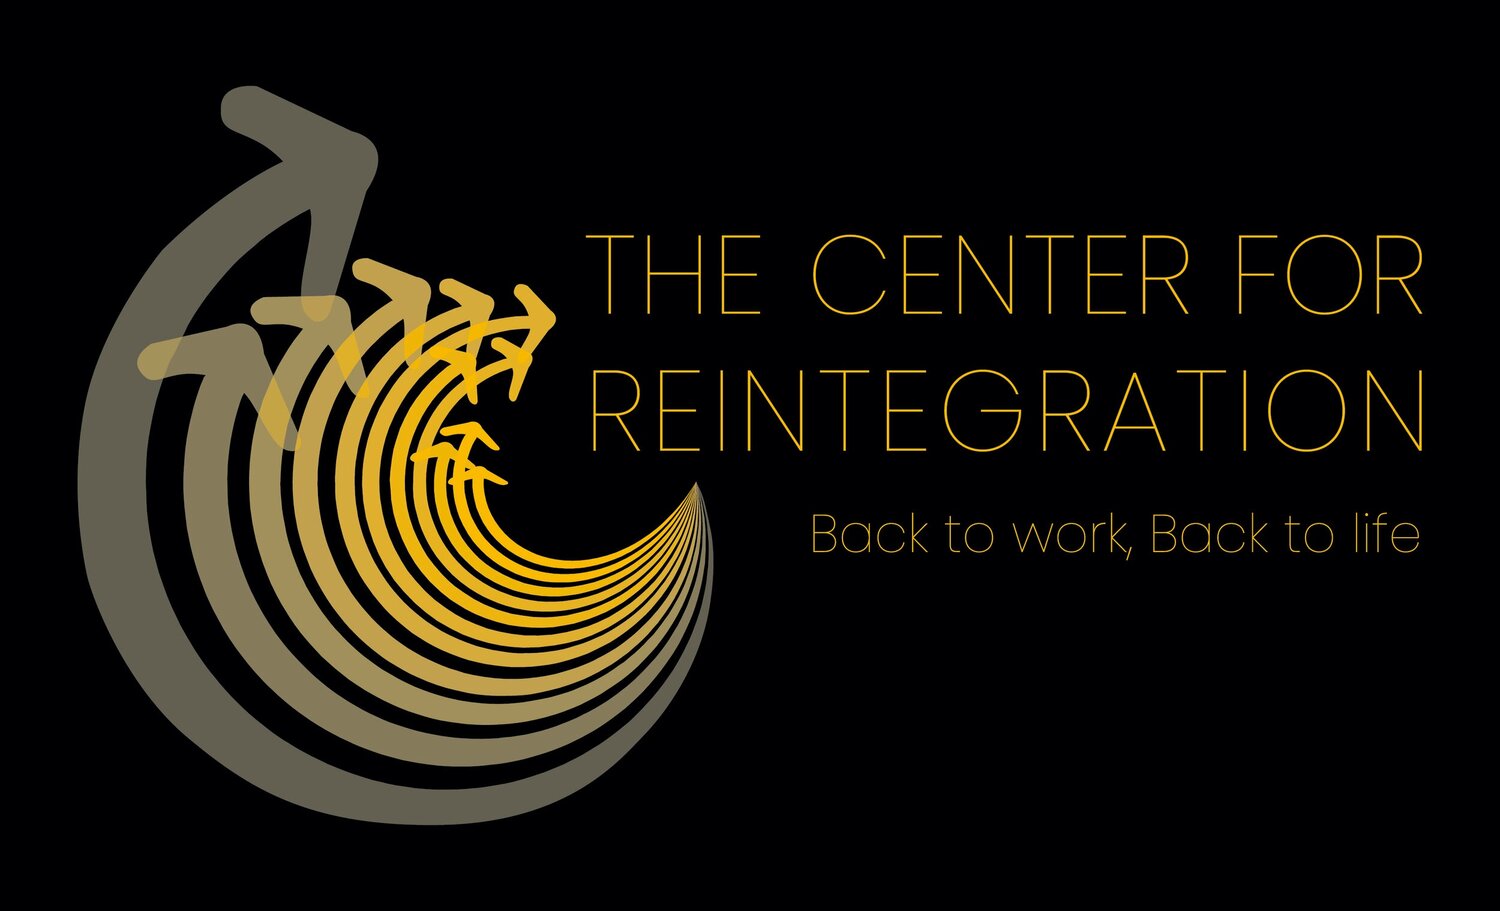 The Center for Reintegration